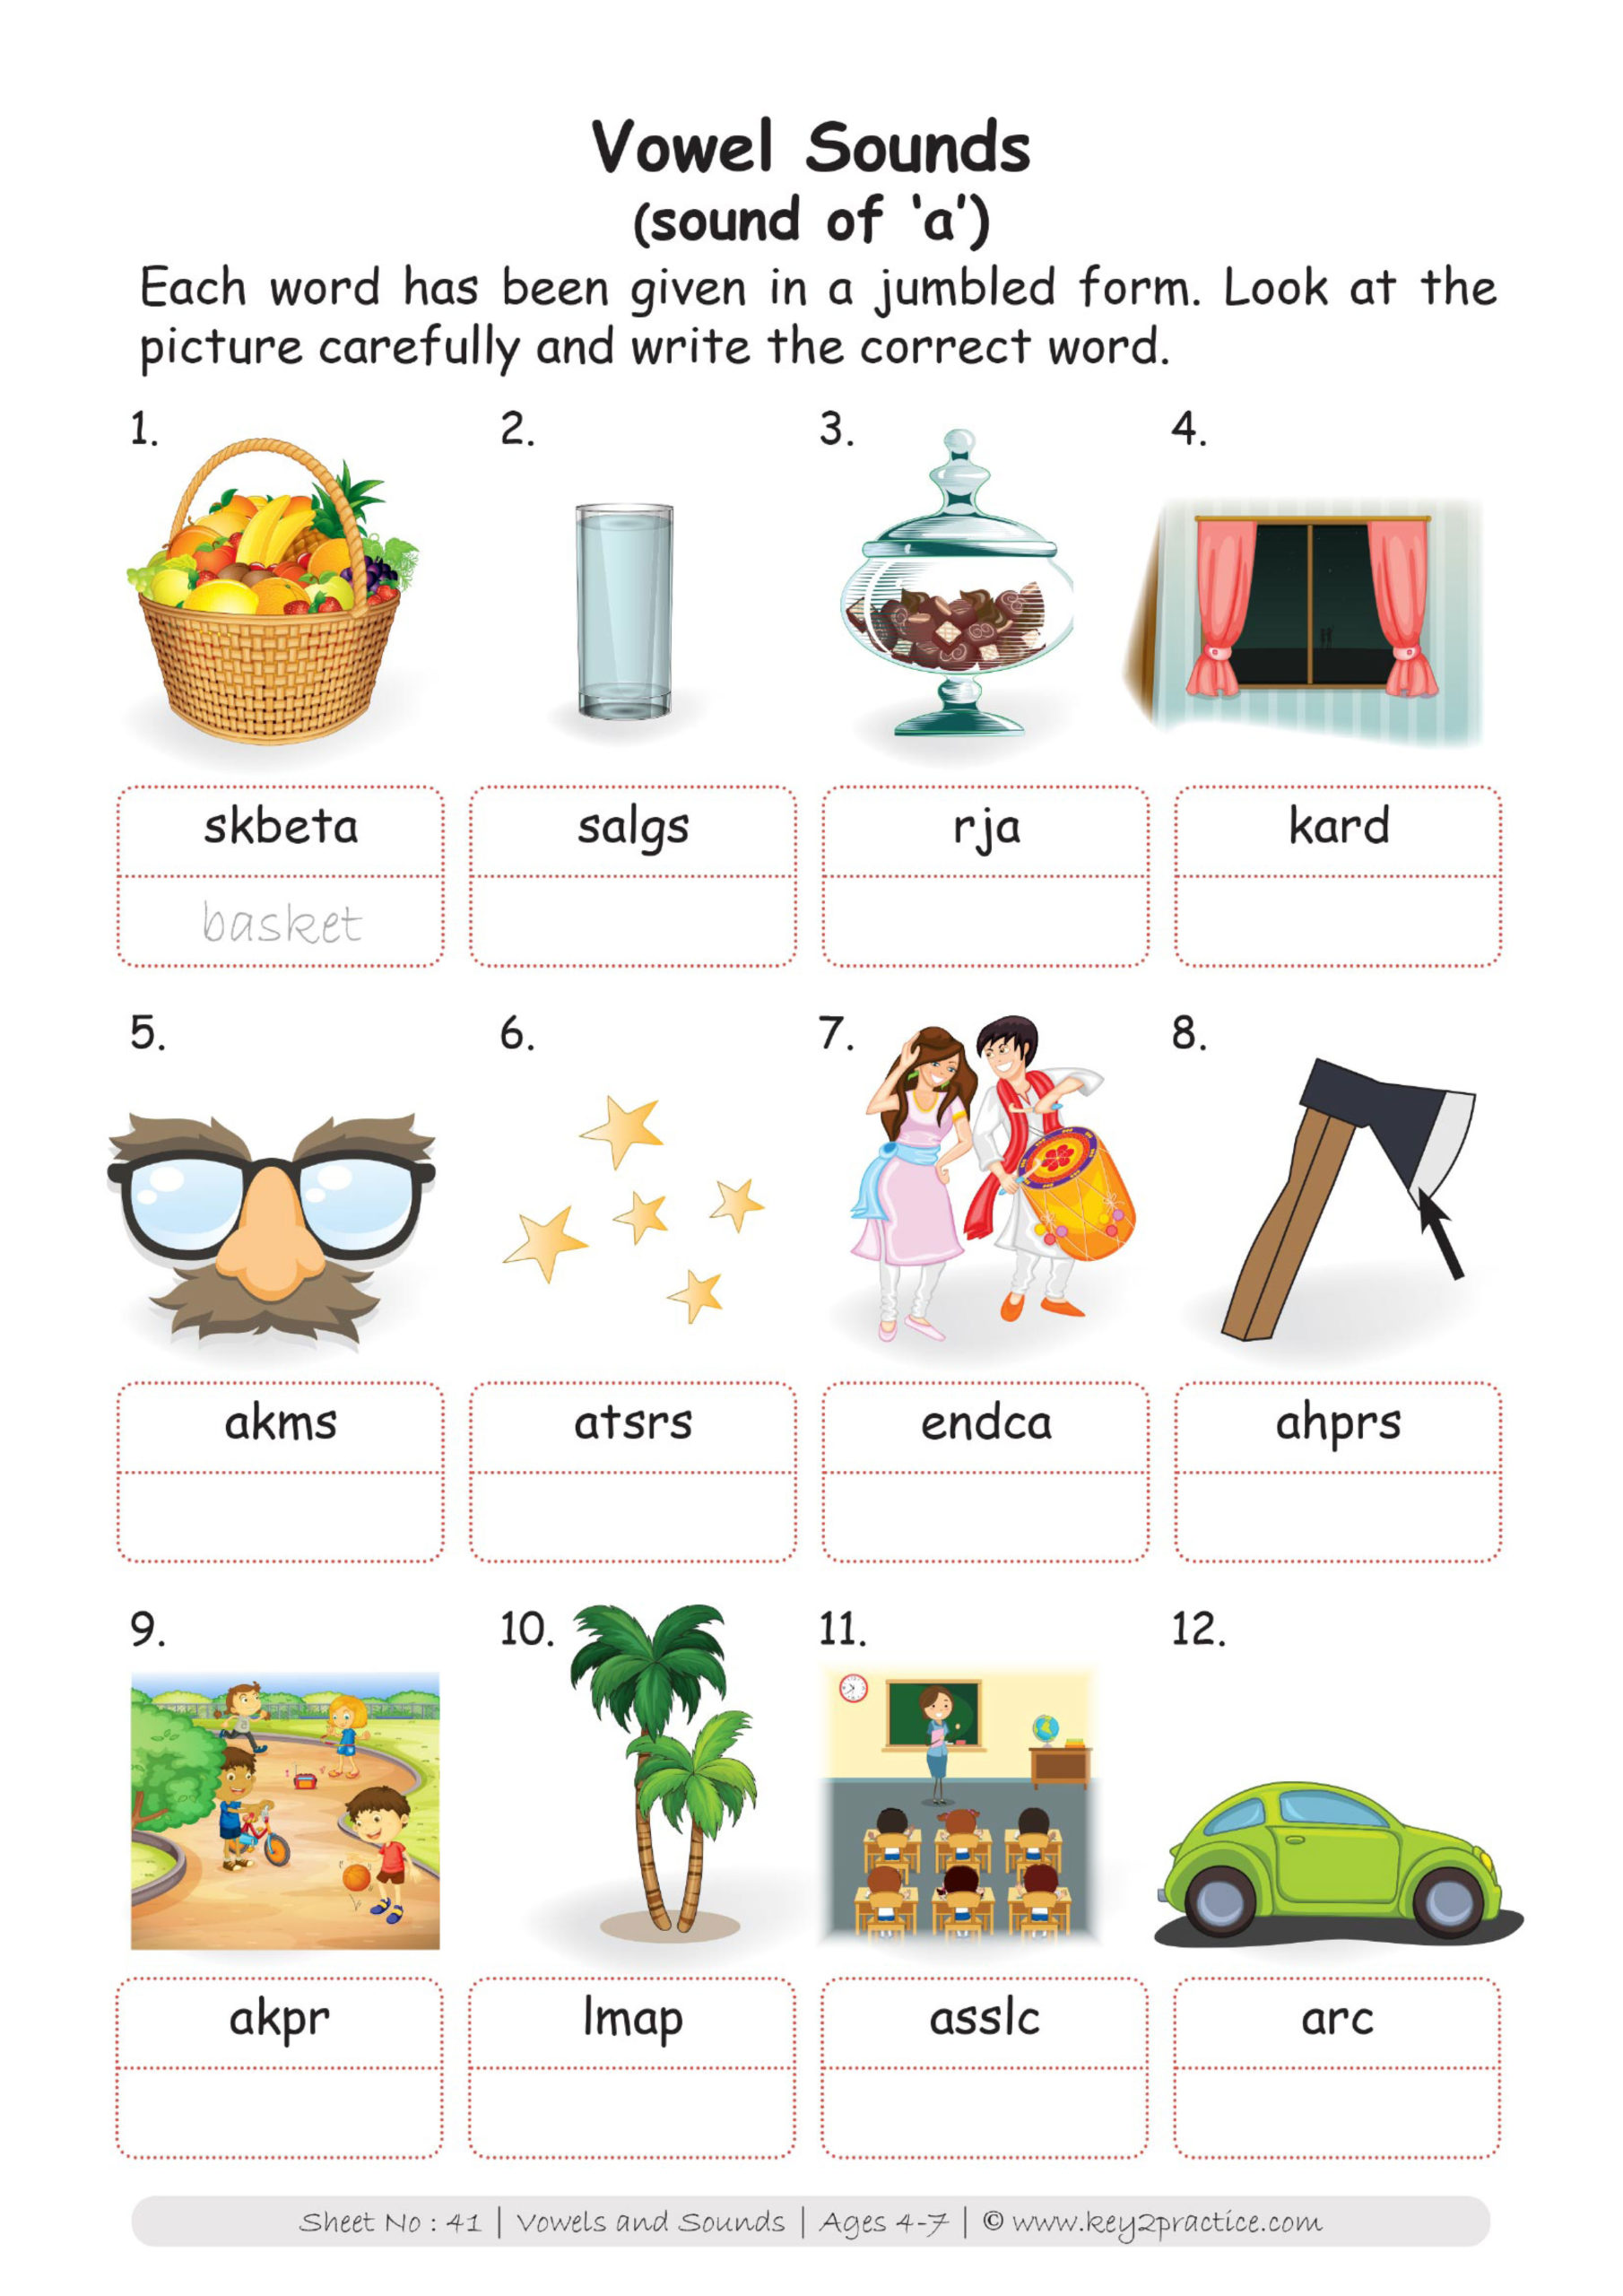 short vowel sounds worksheets for grade 1